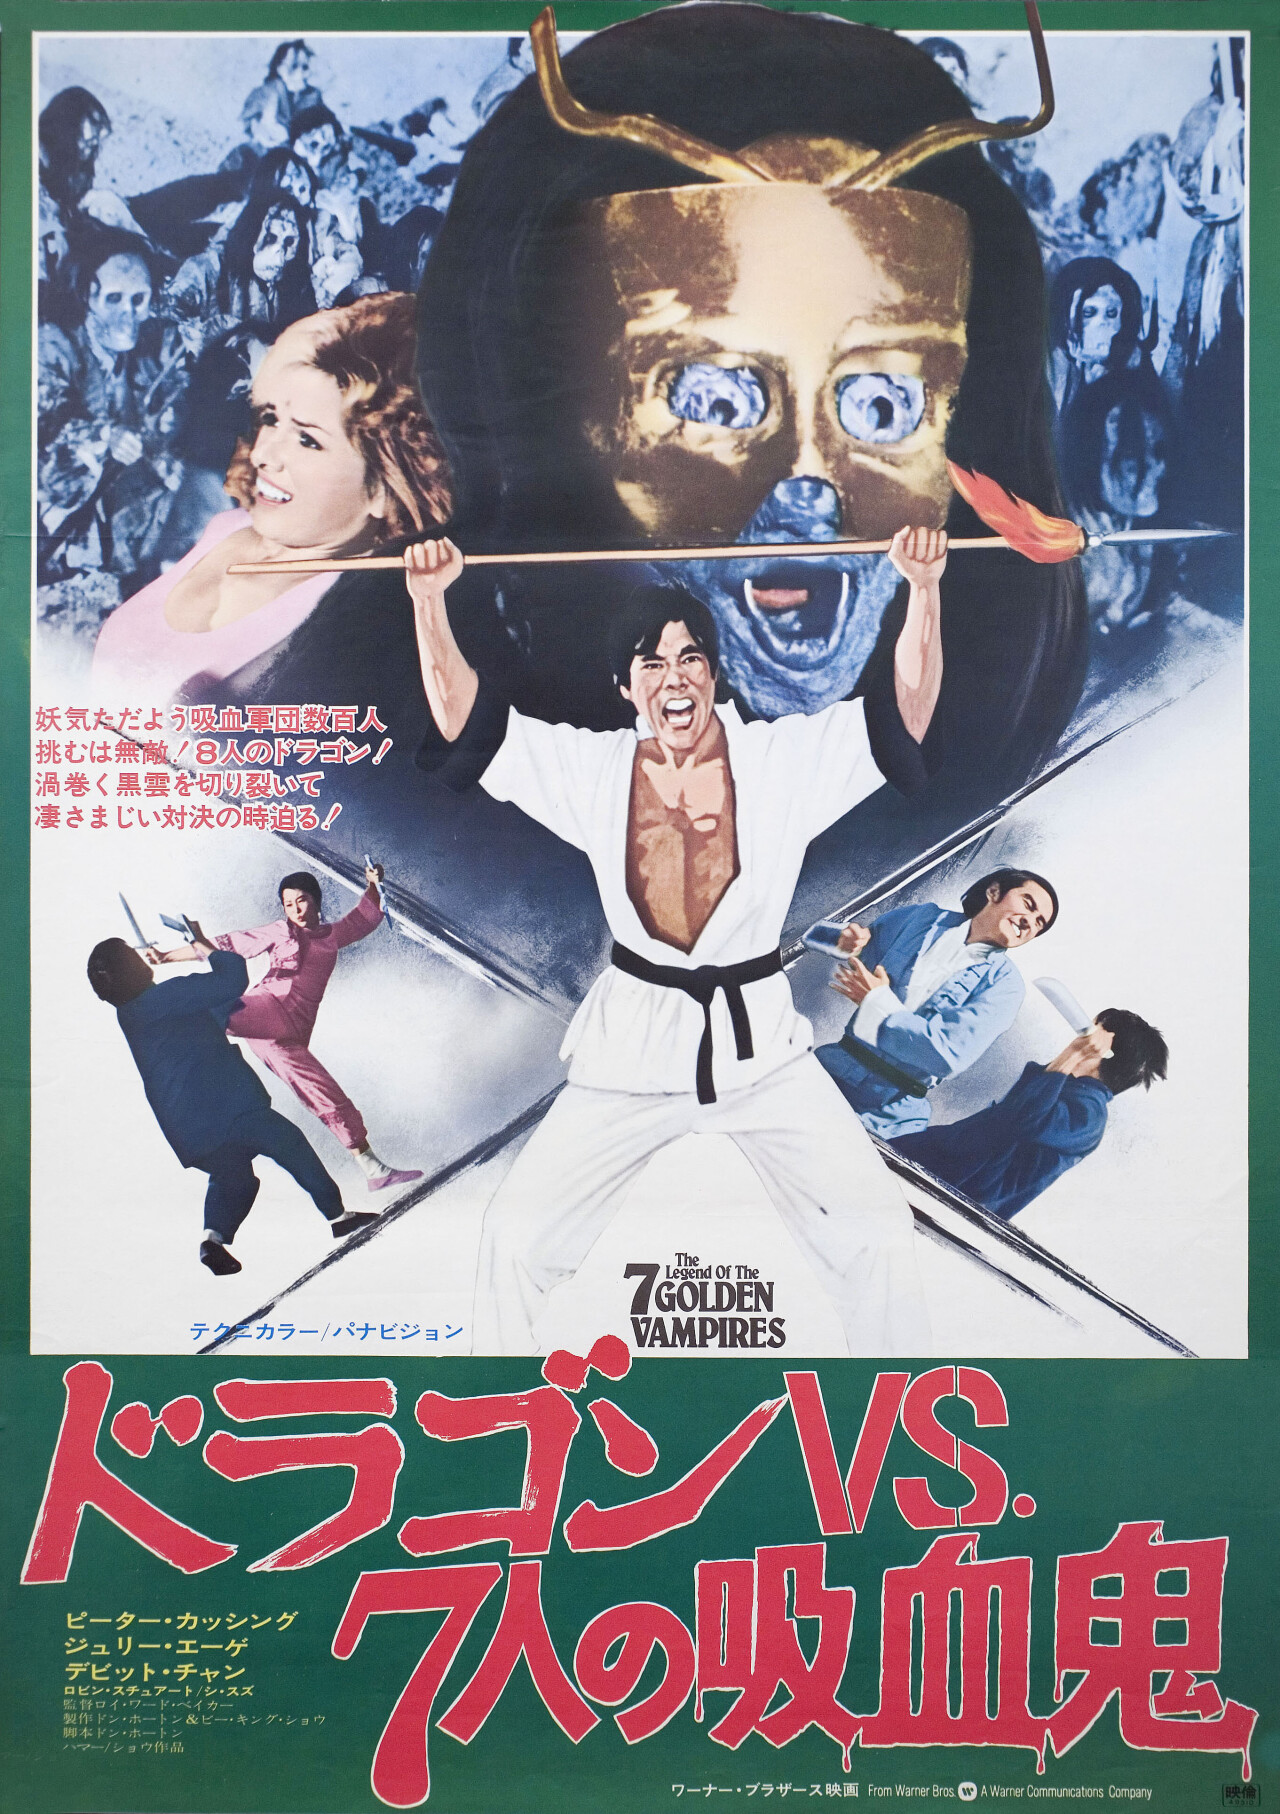 Легенда о семи золотых вампирах (The Legend of the 7 Golden Vampires, 1974), режиссёр Рой Уорд Бейкер, японский постер к фильму (ужасы, 1974 год)